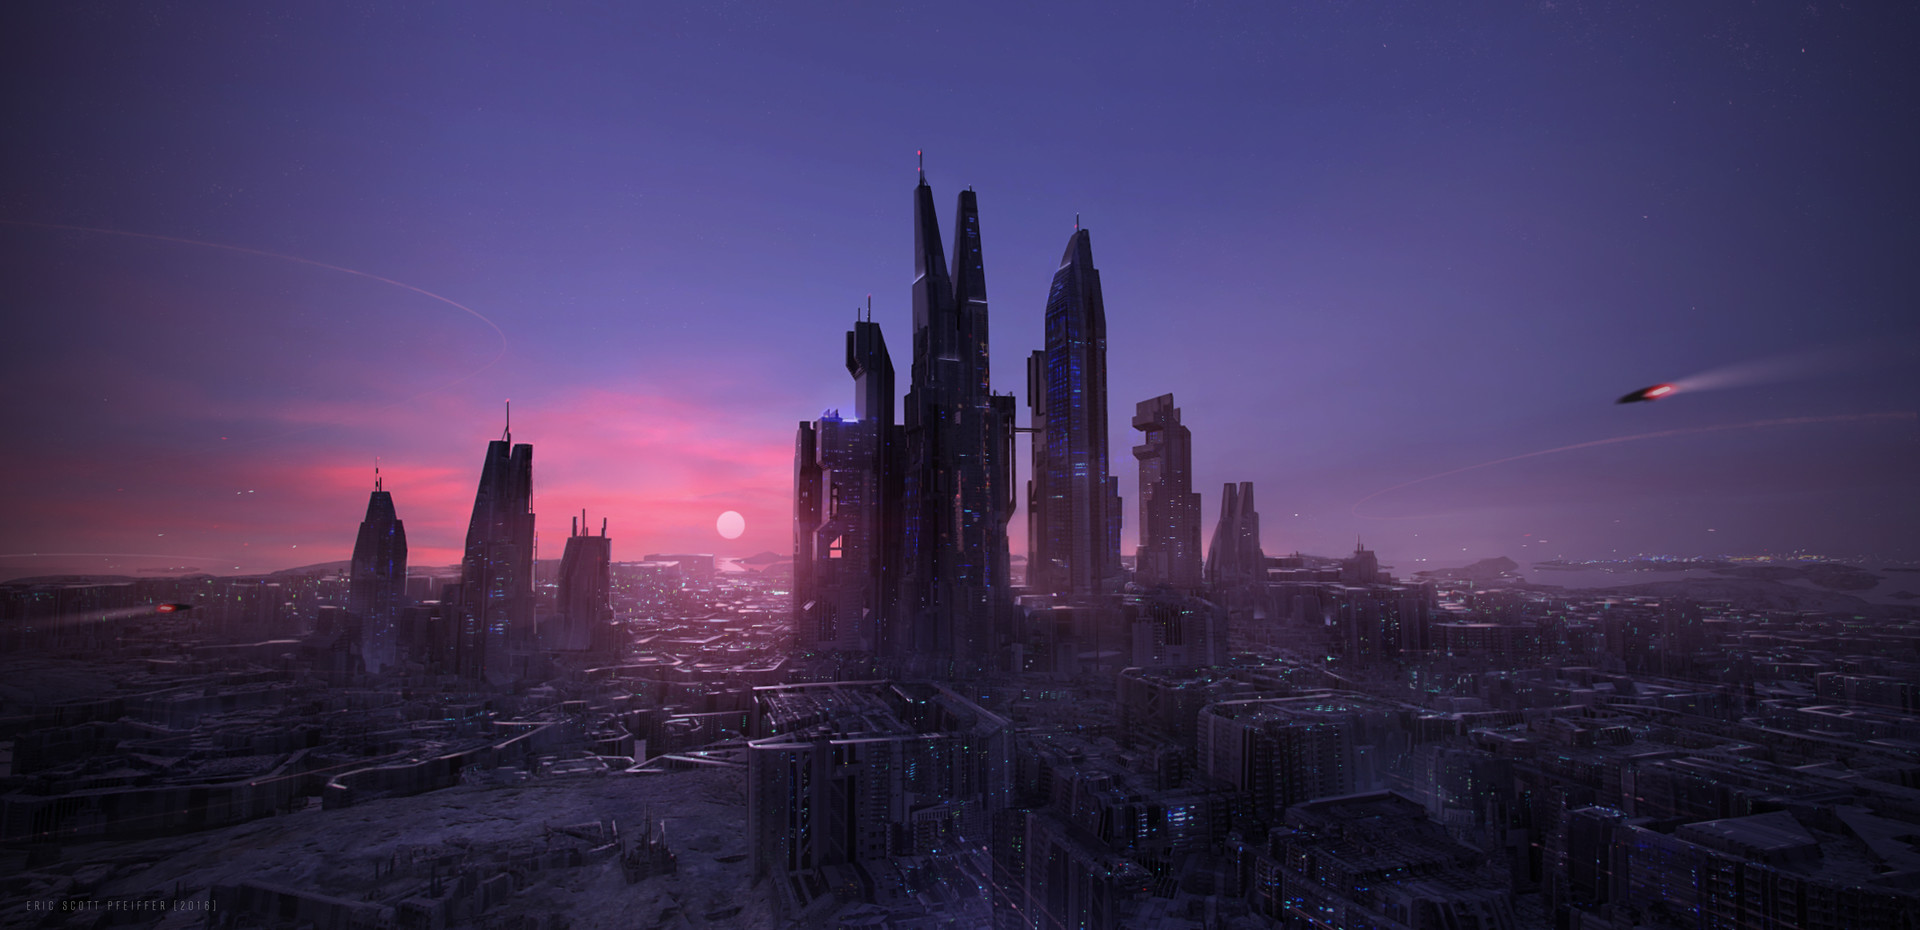 美国游戏概念画家科幻作品欣赏 想象力天马行空